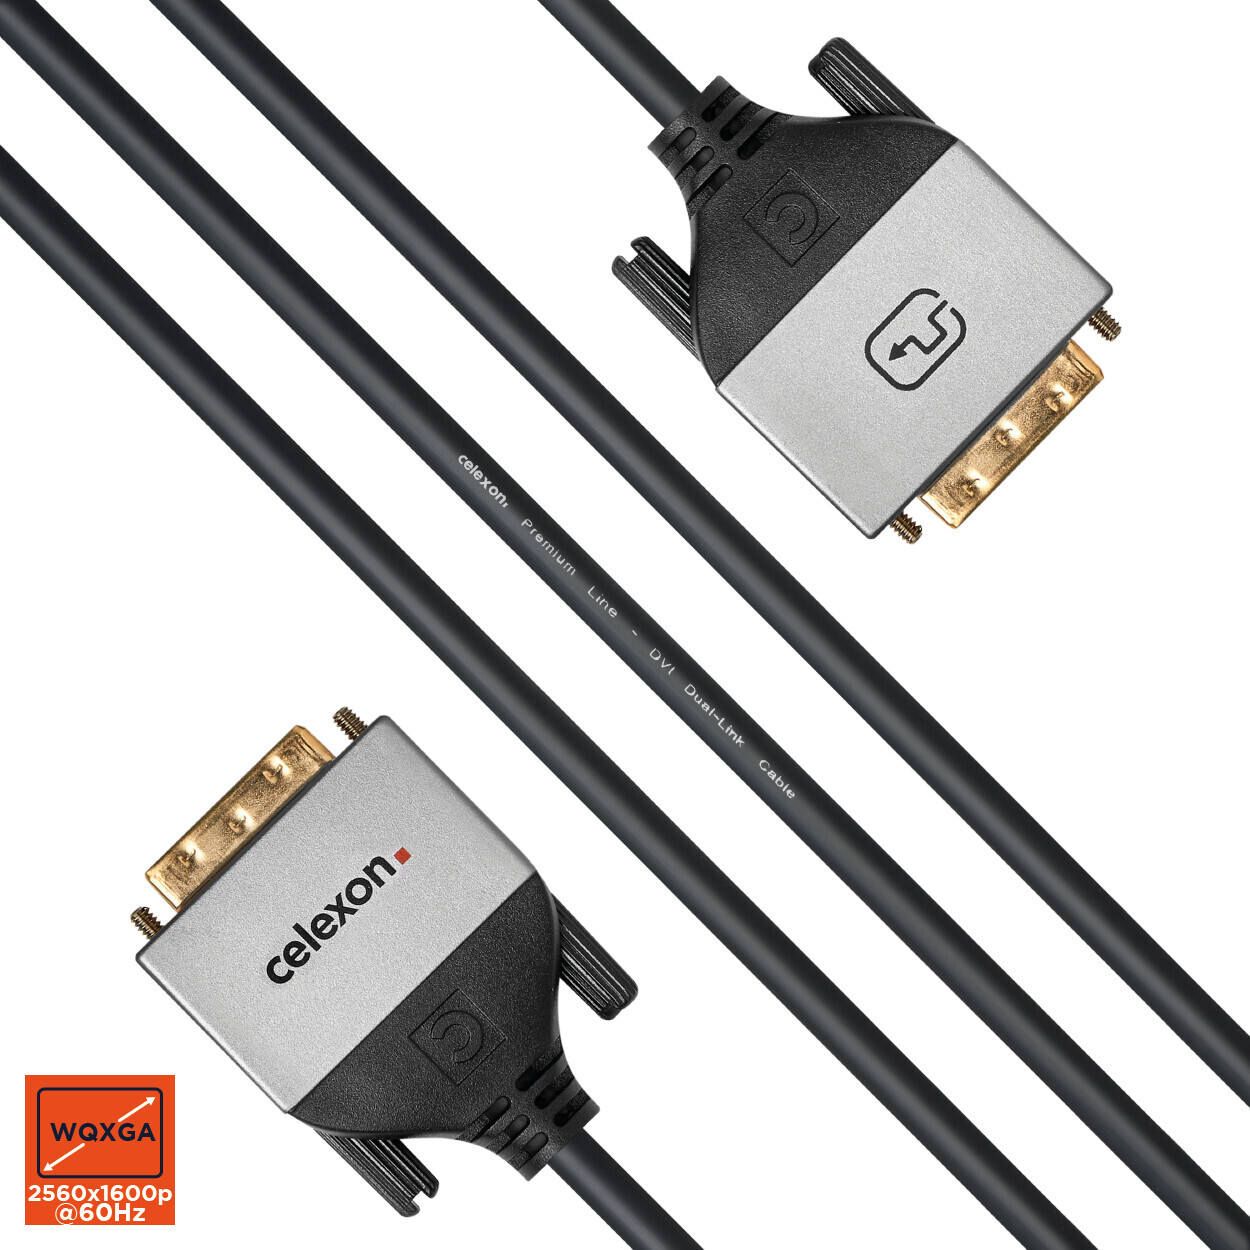 Vorschau: celexon DVI Dual Link Kabel 7,5m - Professional Line